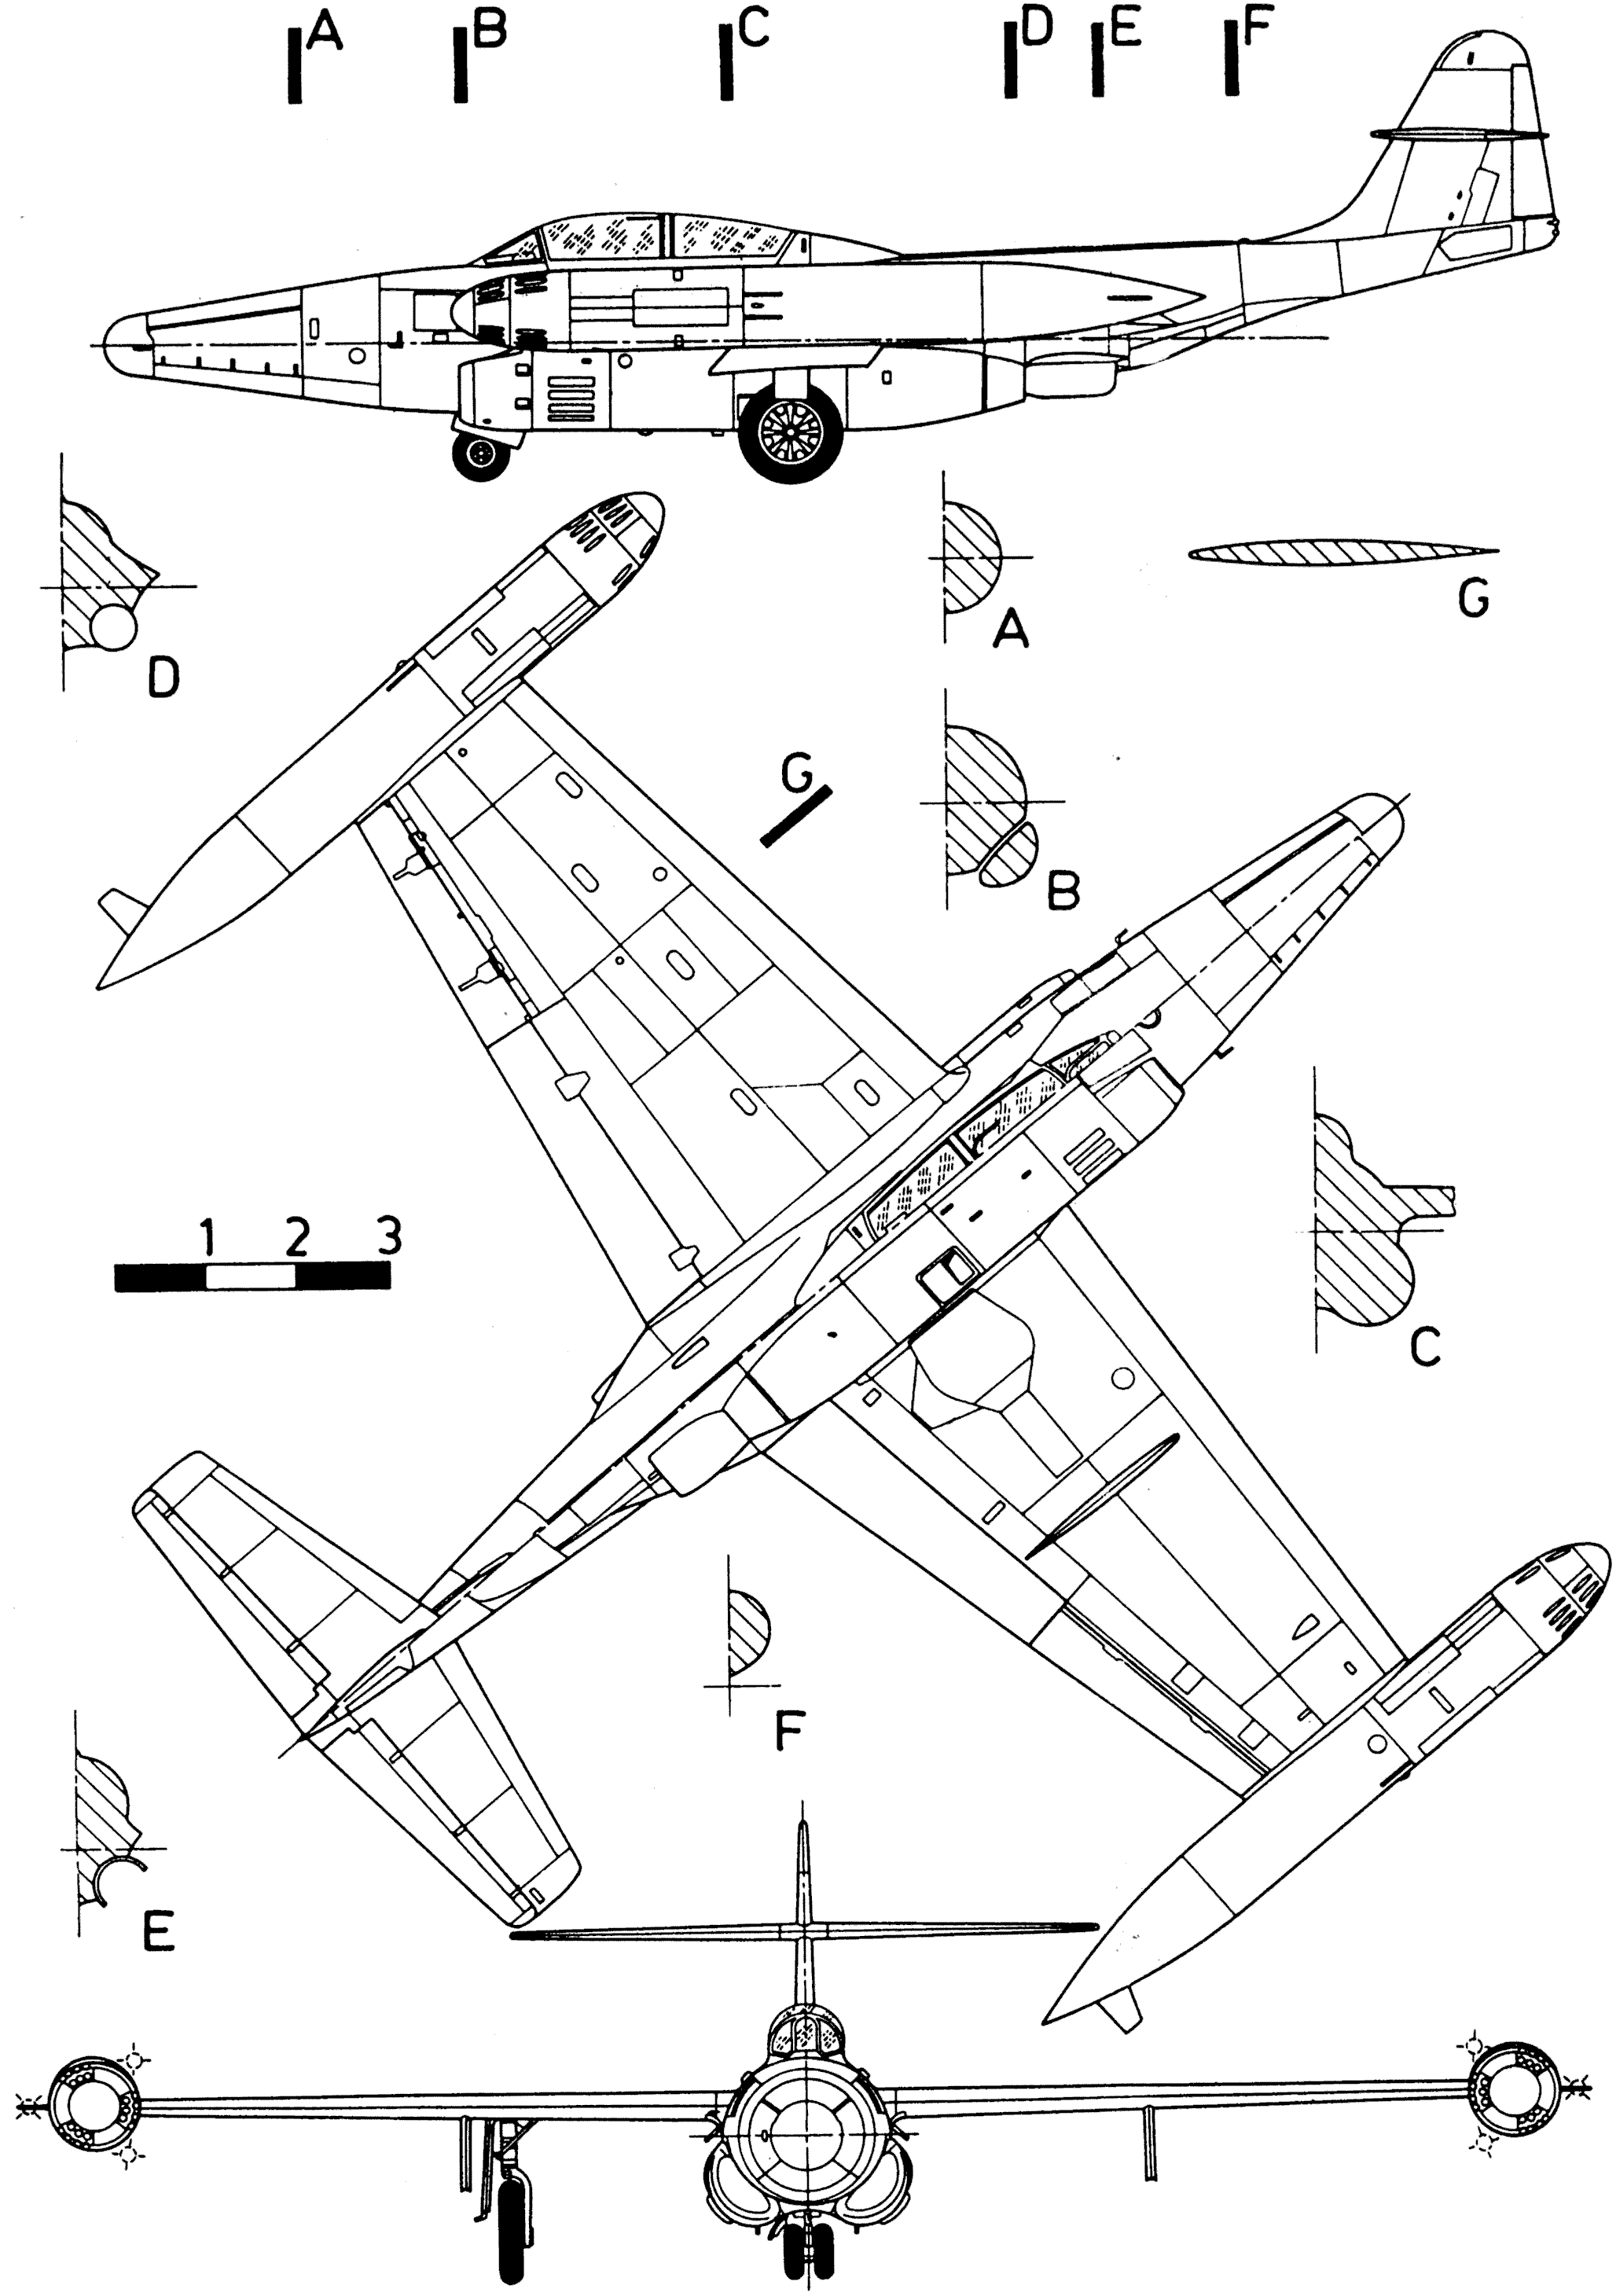 Northrop F-89 Scorpion Wallpapers